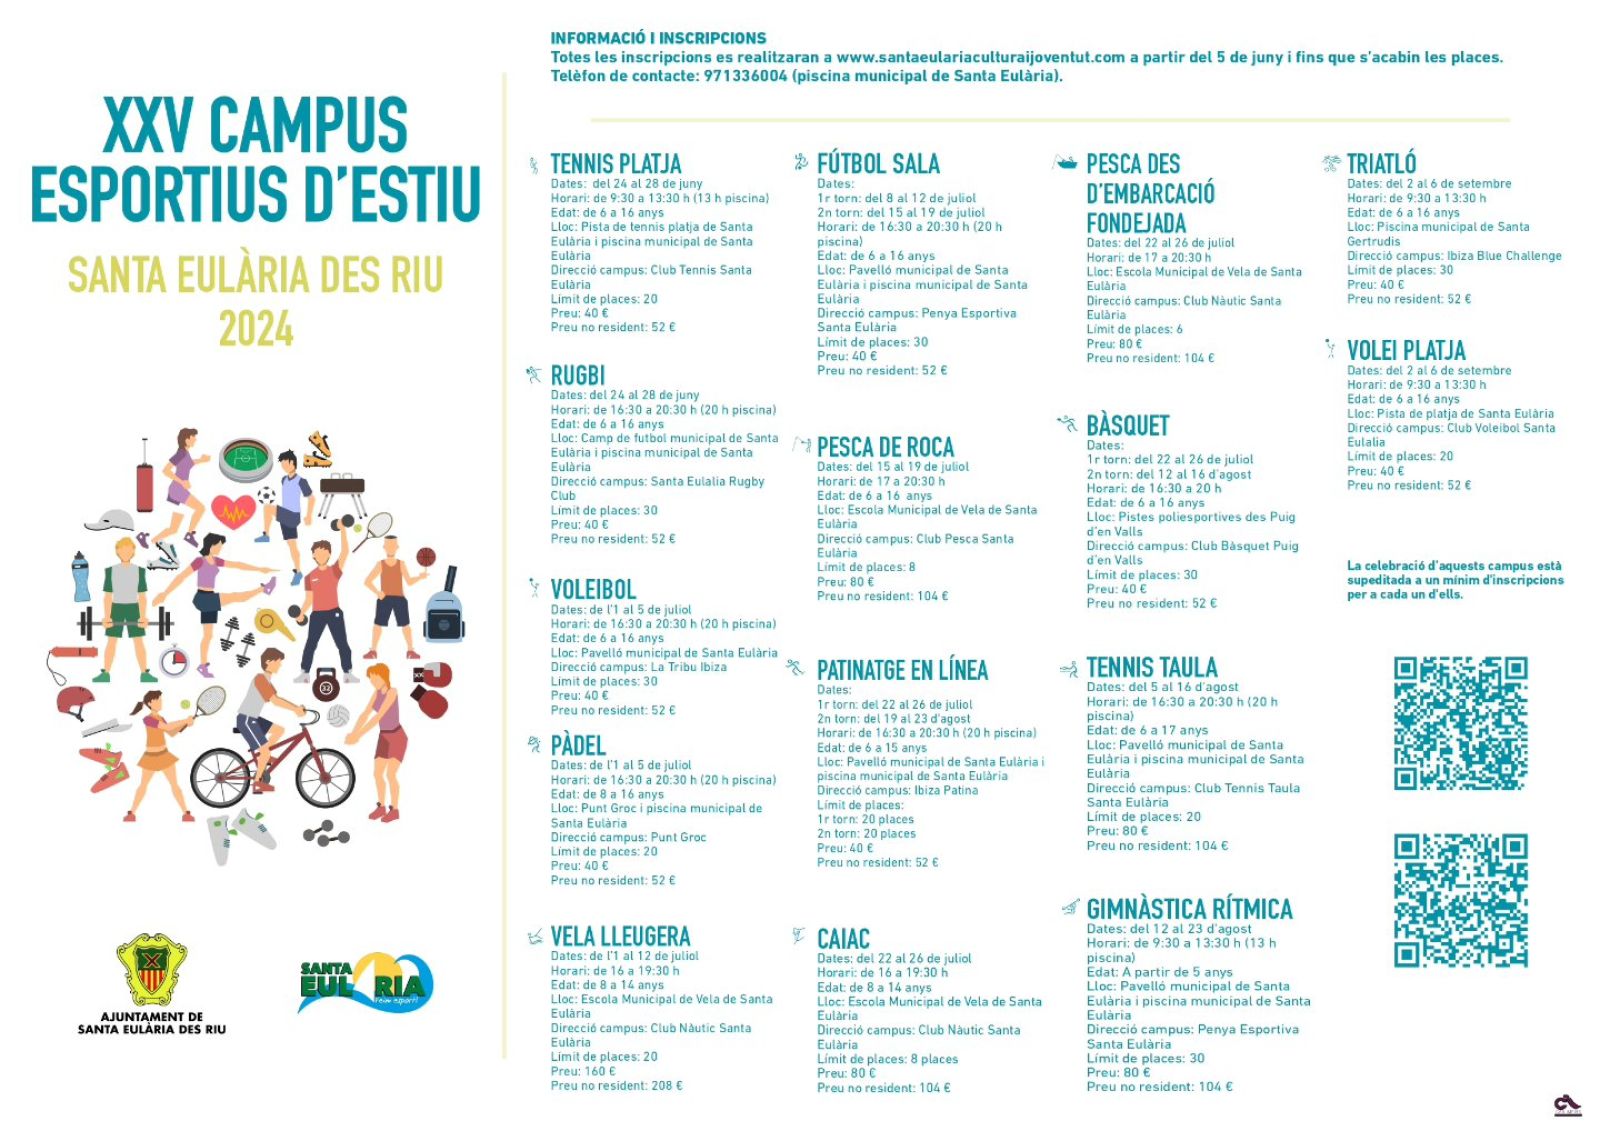 Los y las menores de Santa Eulària des Riu podrán disfrutar entre junio y septiembre de una quincena de campus deportivos que incluyen como novedad el vóley playa